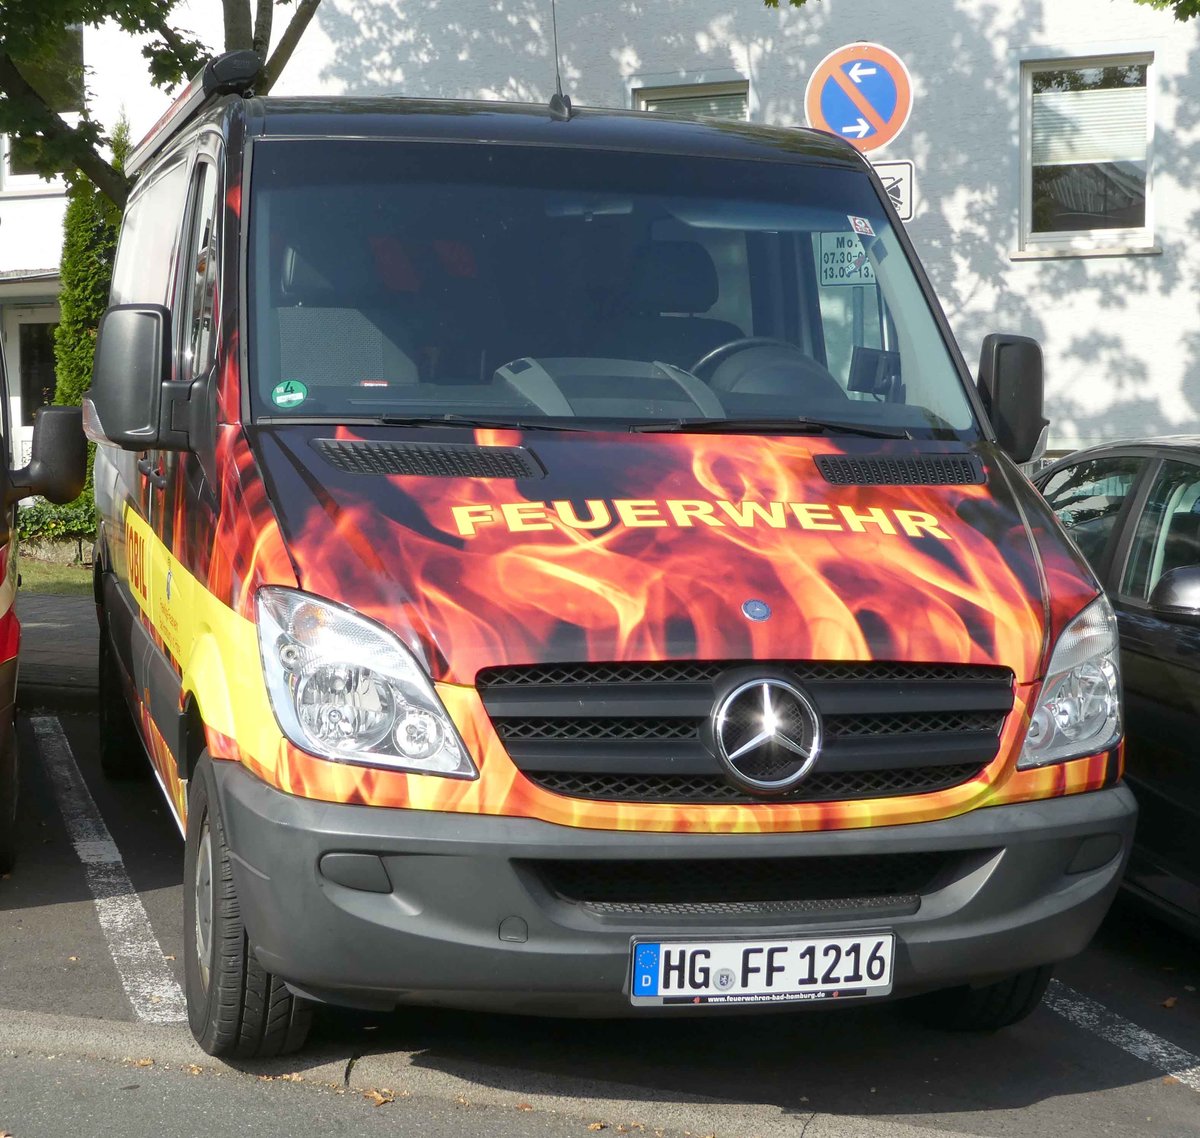 =MB Sprinter als Infomobil der Feuerwehr BAD HOMBURG steht in Hünfeld anl. der Hessischen Feuerwehrleistungsübung 2019, 09-2019